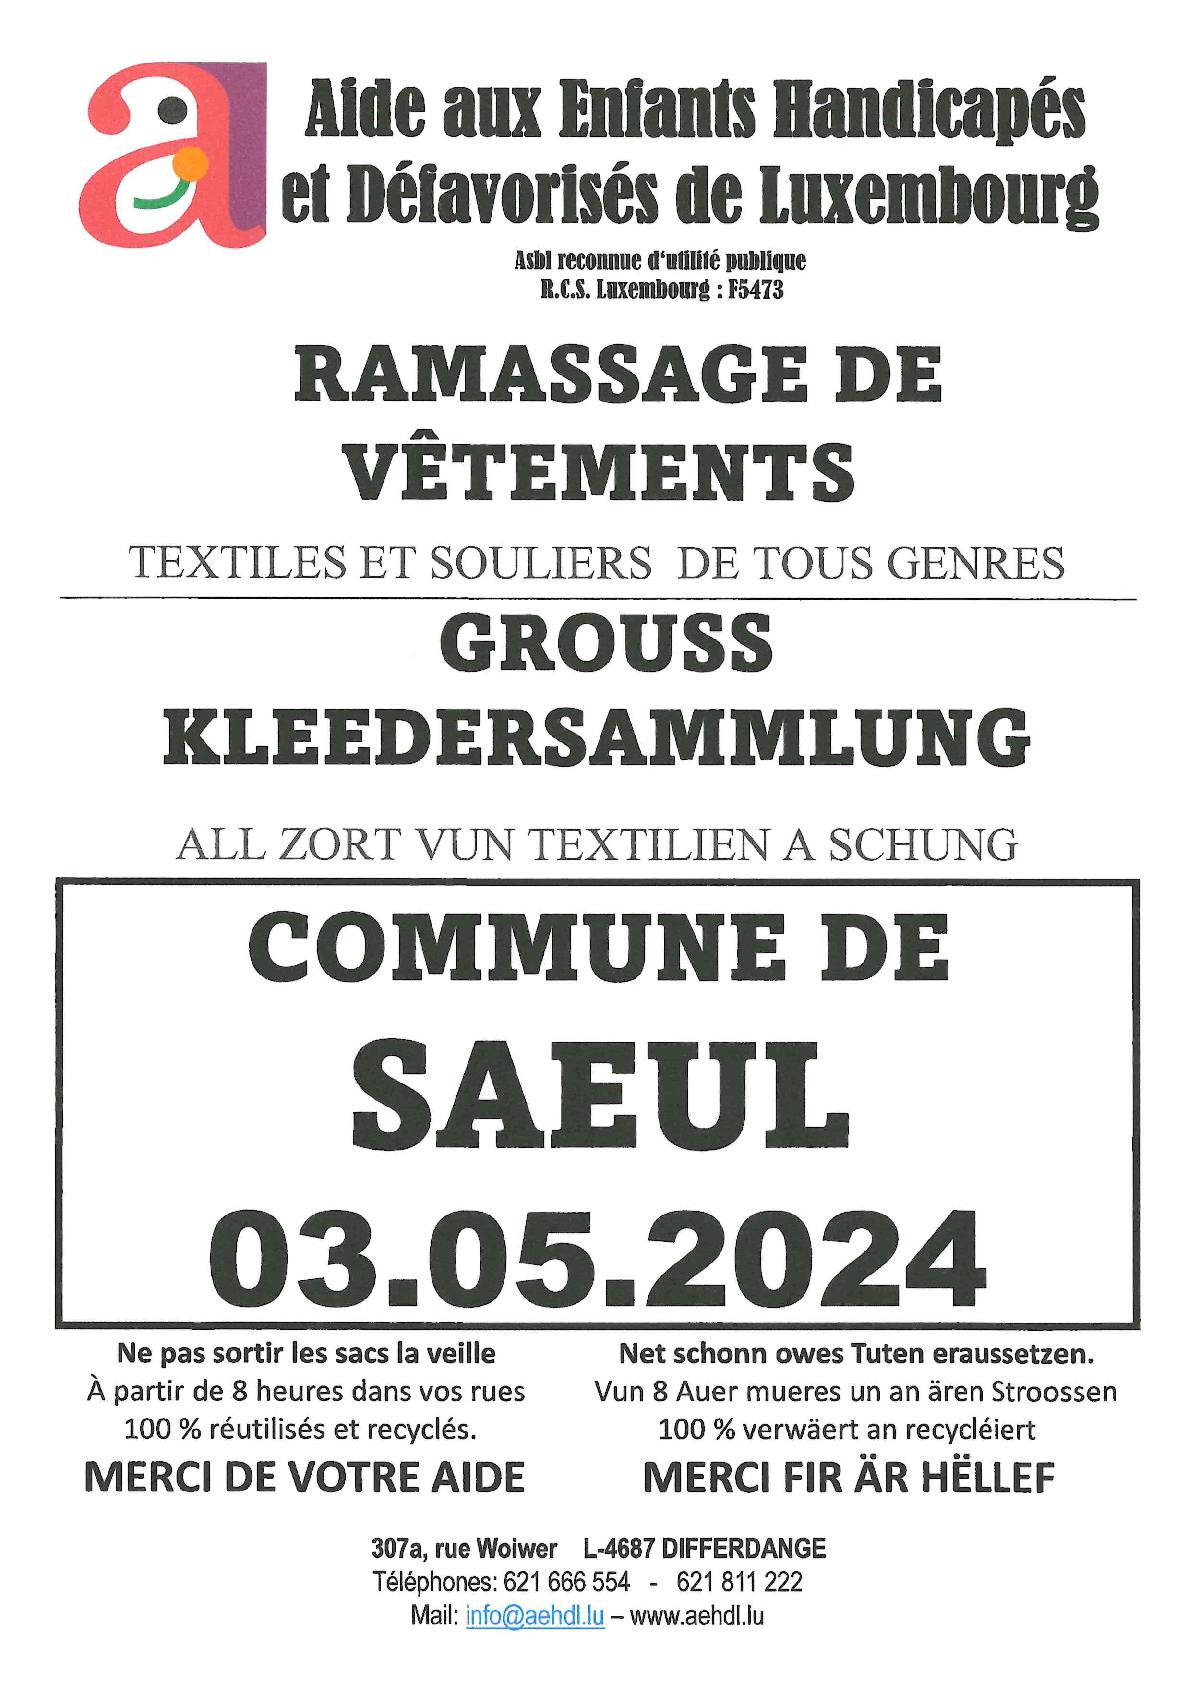 La collecte de vêtements AEHD 2024 | Vendredi, le 03 mai 2024 dans la commune de Saeul !